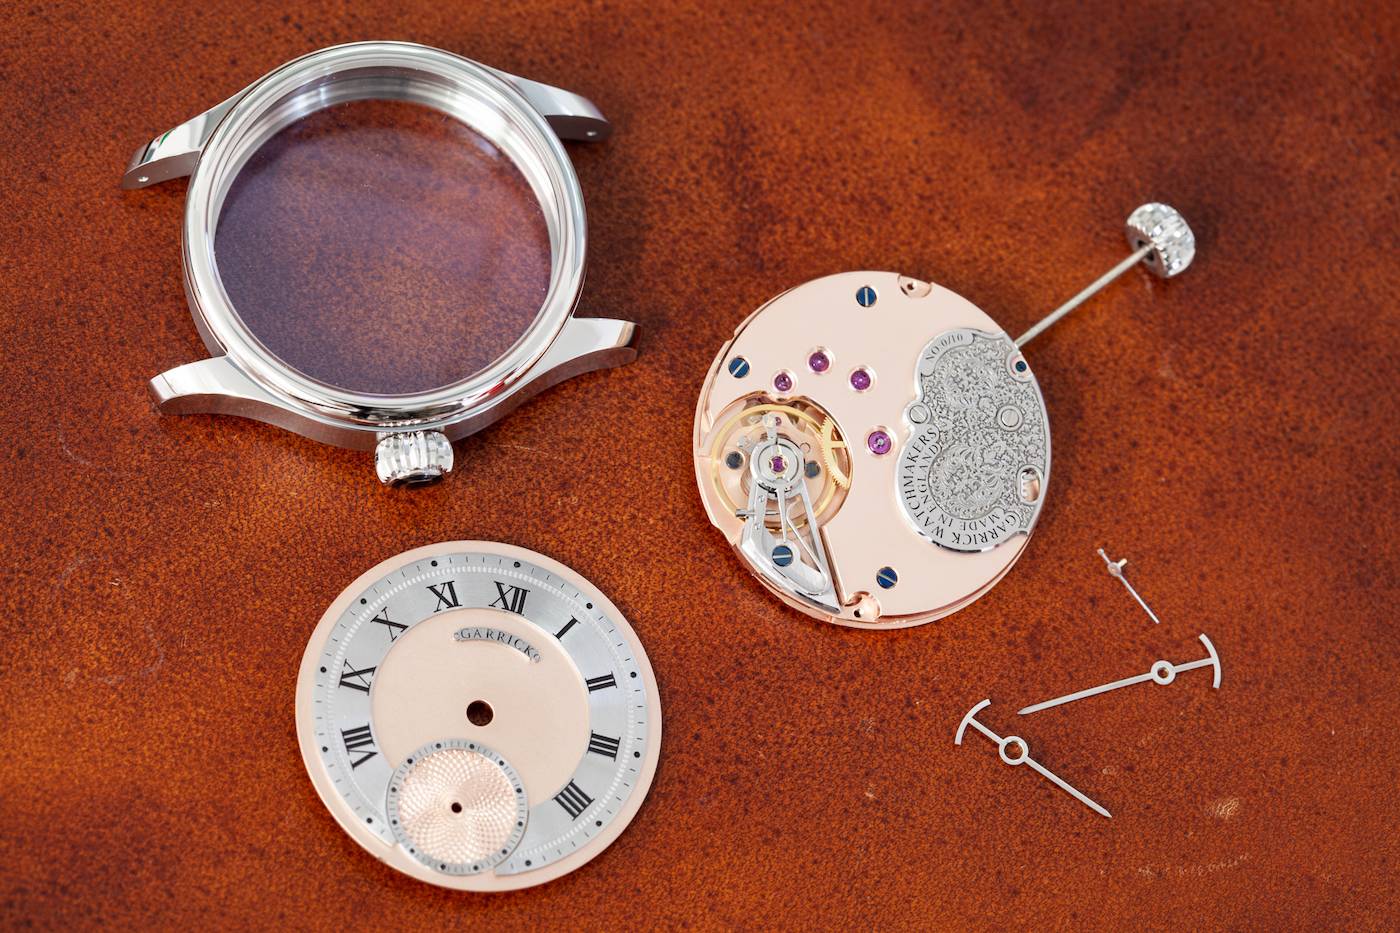 Garrick Watchmakers: el curioso caso de la Alta Relojería Británica